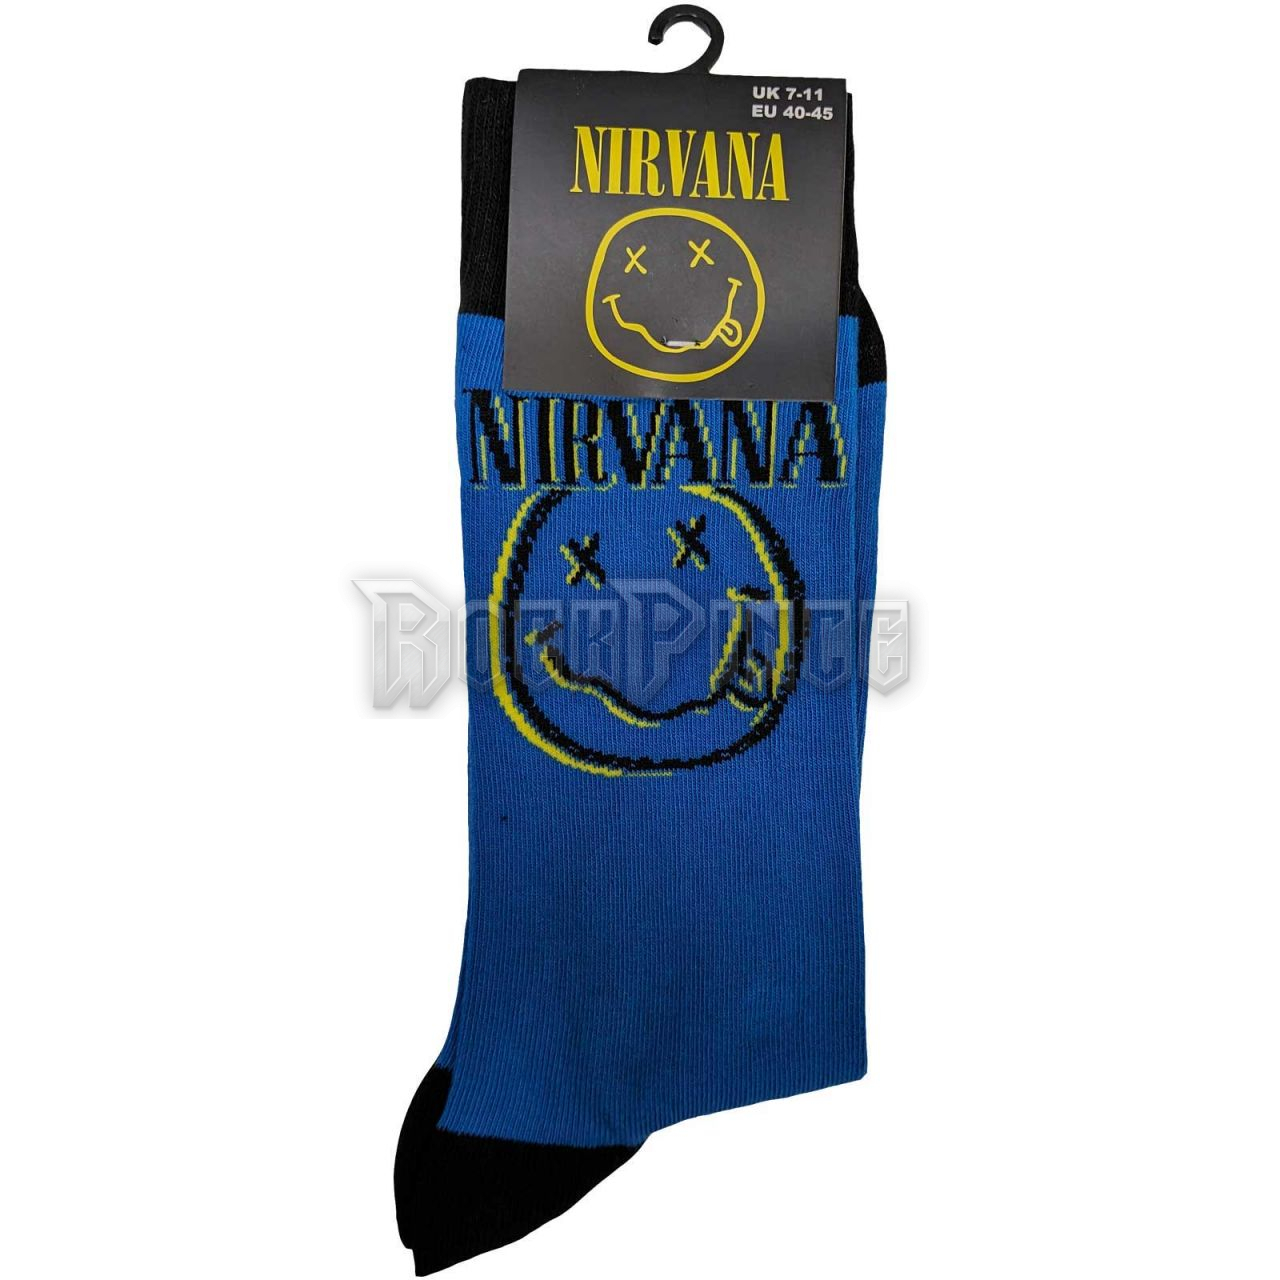 Nirvana - Inverse Happy Face - unisex bokazokni (egy méret: 40-45) - NIRVSCK05MBL